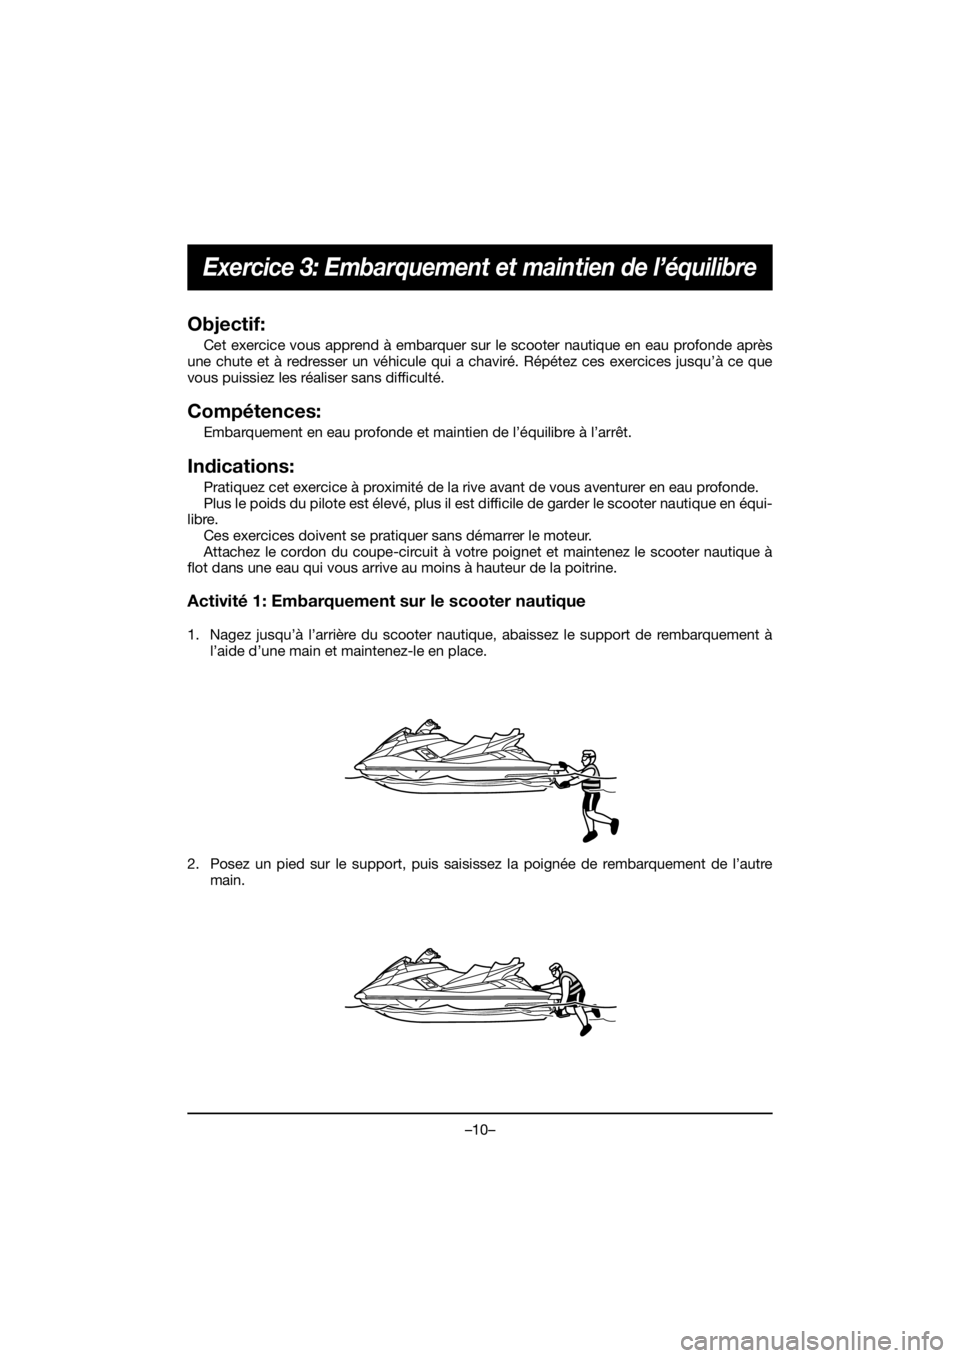 YAMAHA FX HO 2020  Manuale de Empleo (in Spanish) –10–
Exercice 3: Embarquement et maintien de l’équilibre
Objectif:
Cet exercice vous apprend à embarquer sur le scooter nautique en eau profonde après
une chute et à redresser un véhicule q